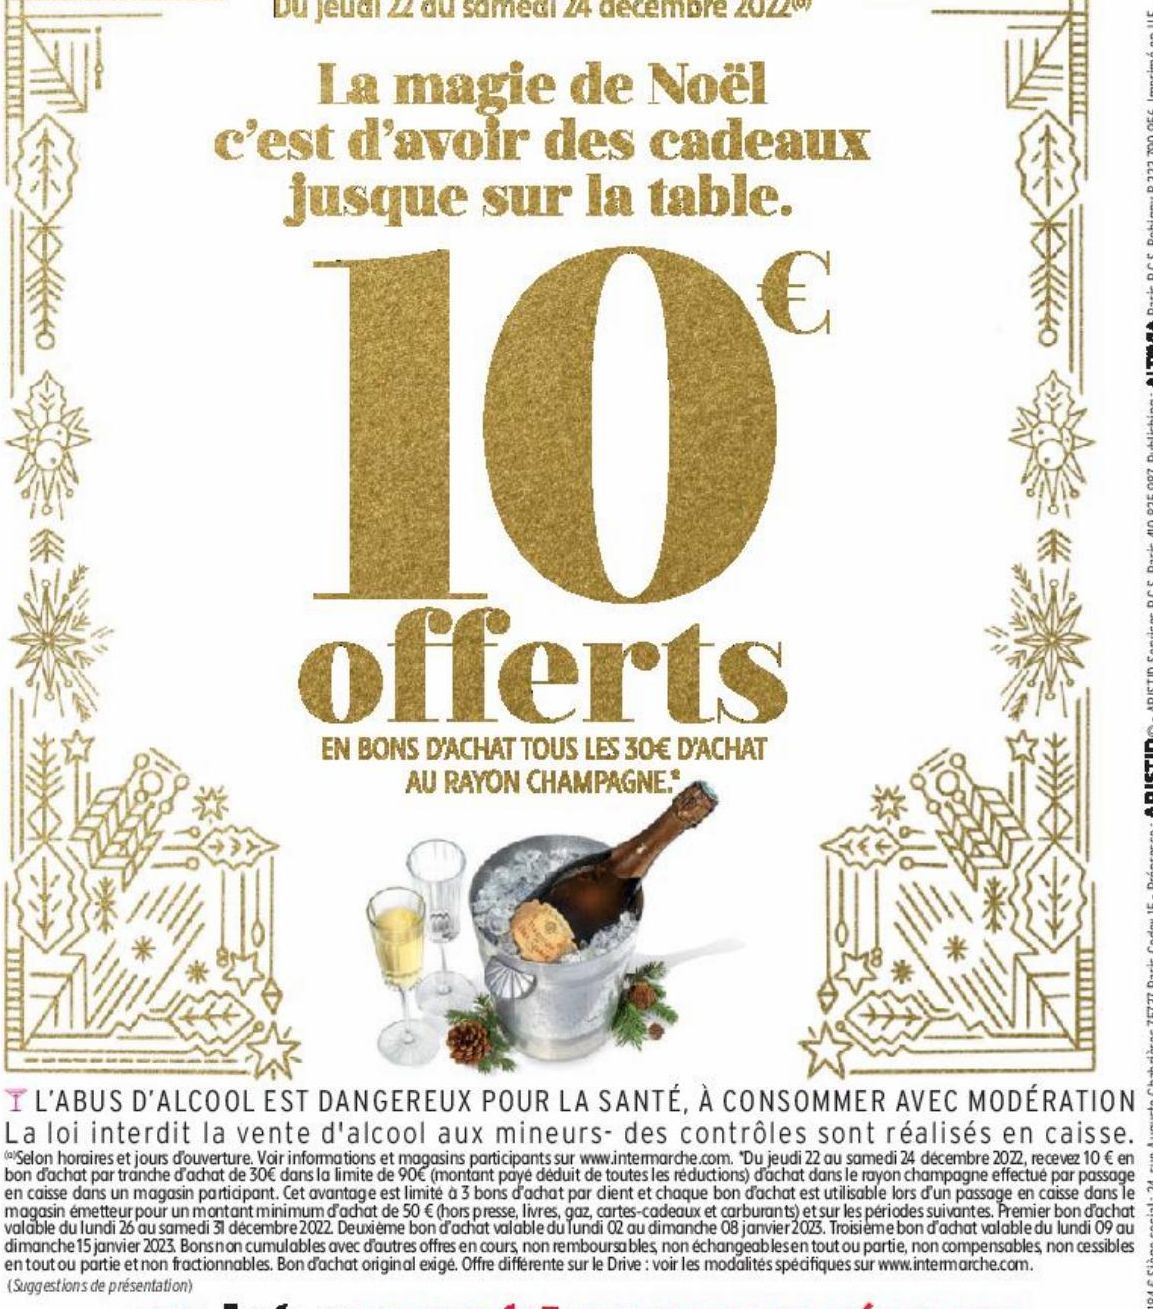 10€ offerts en bons d'achat tous les 30€ d'achat au rayon champagne